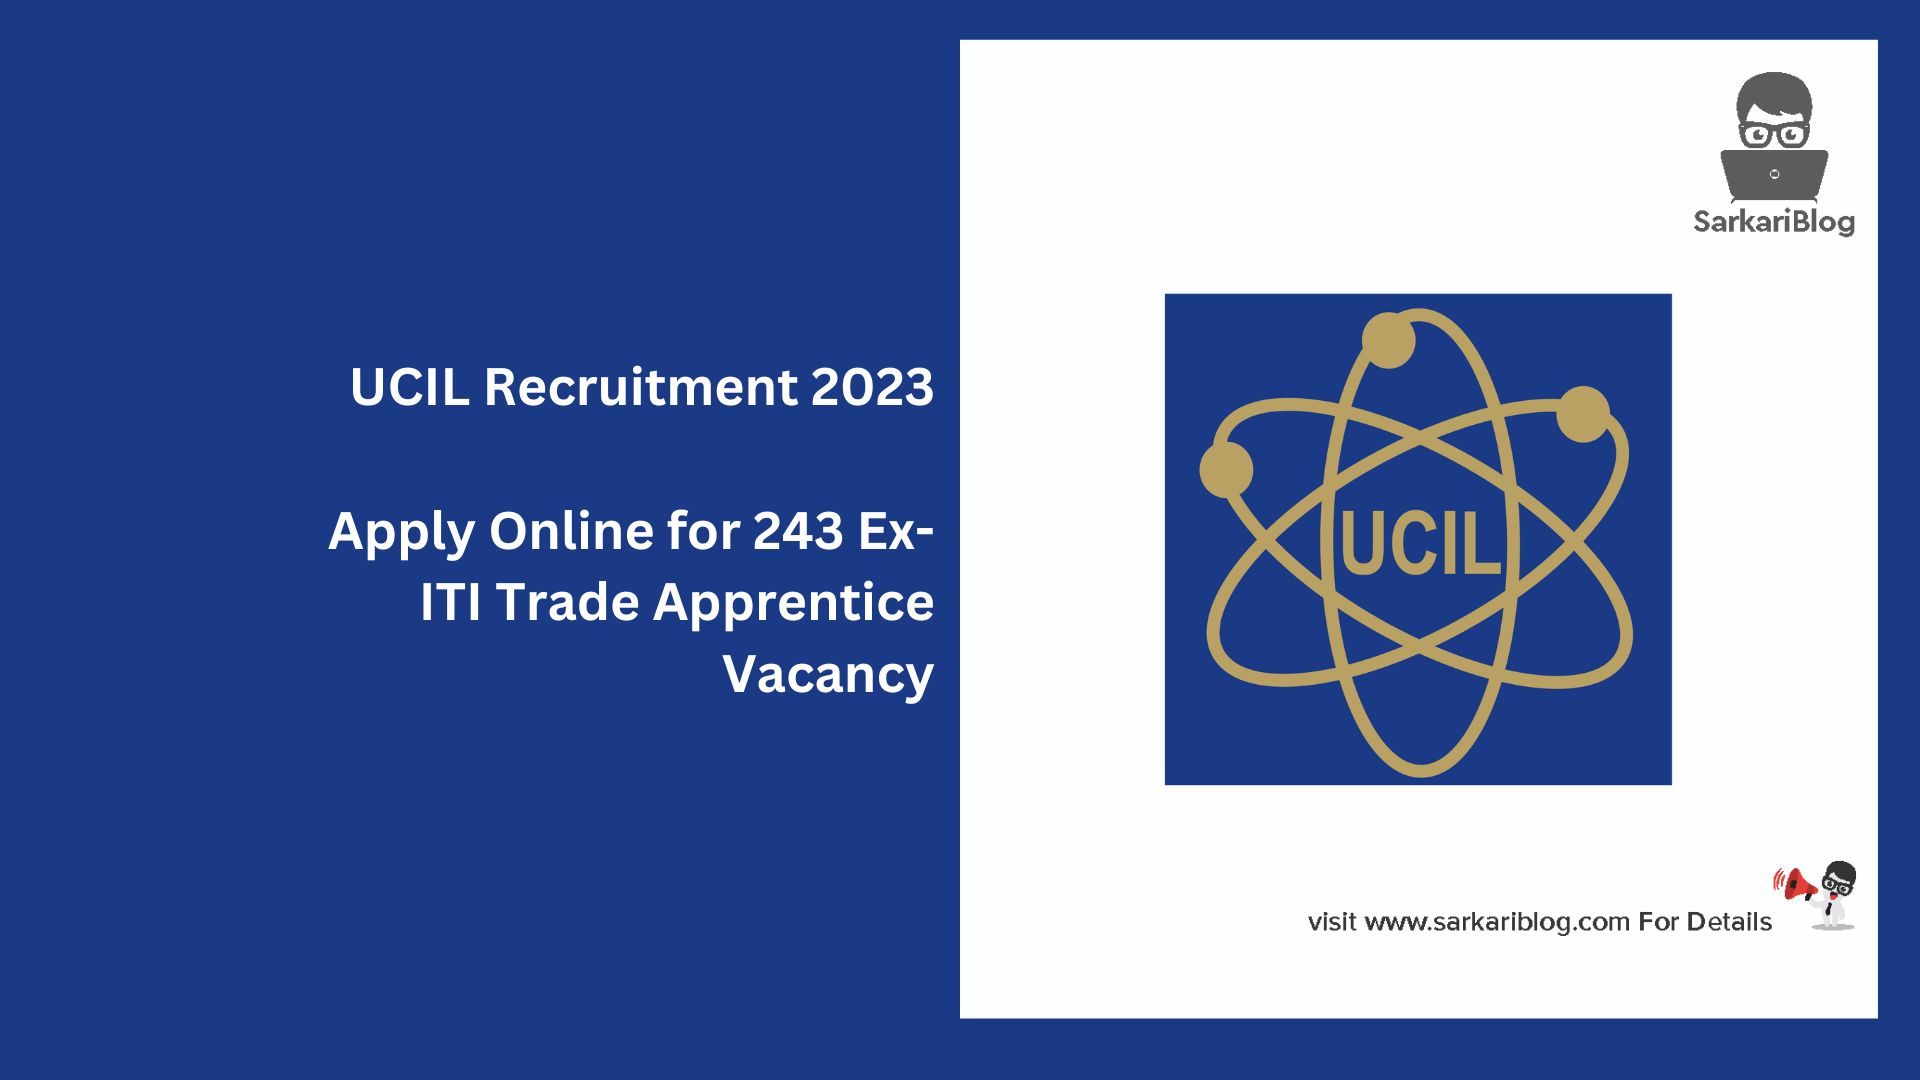 UCIL Recruitment 2023